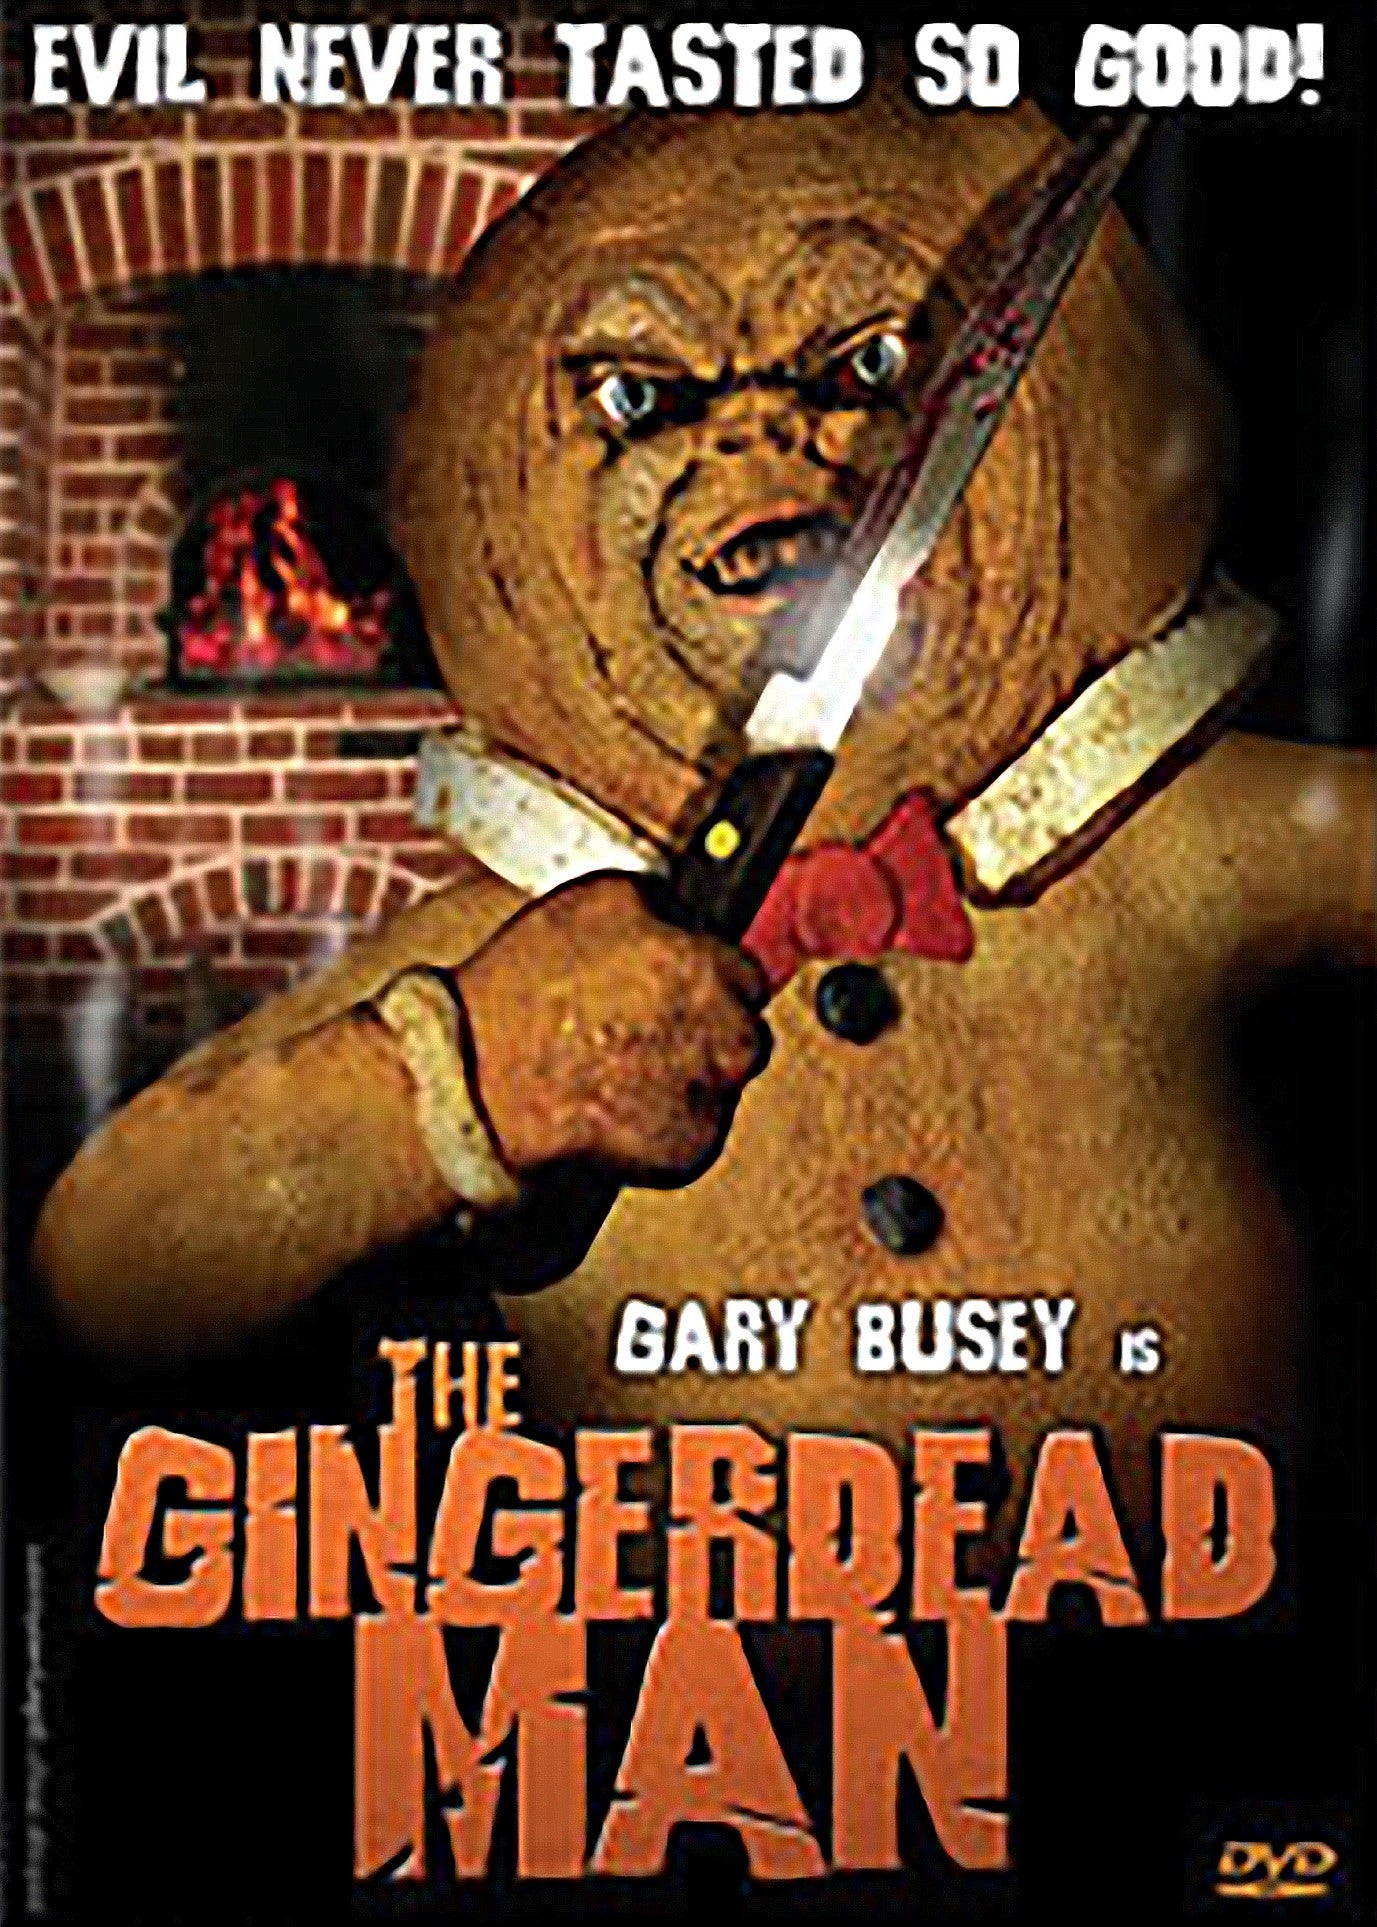 THE GINGERDEAD MAN DVD